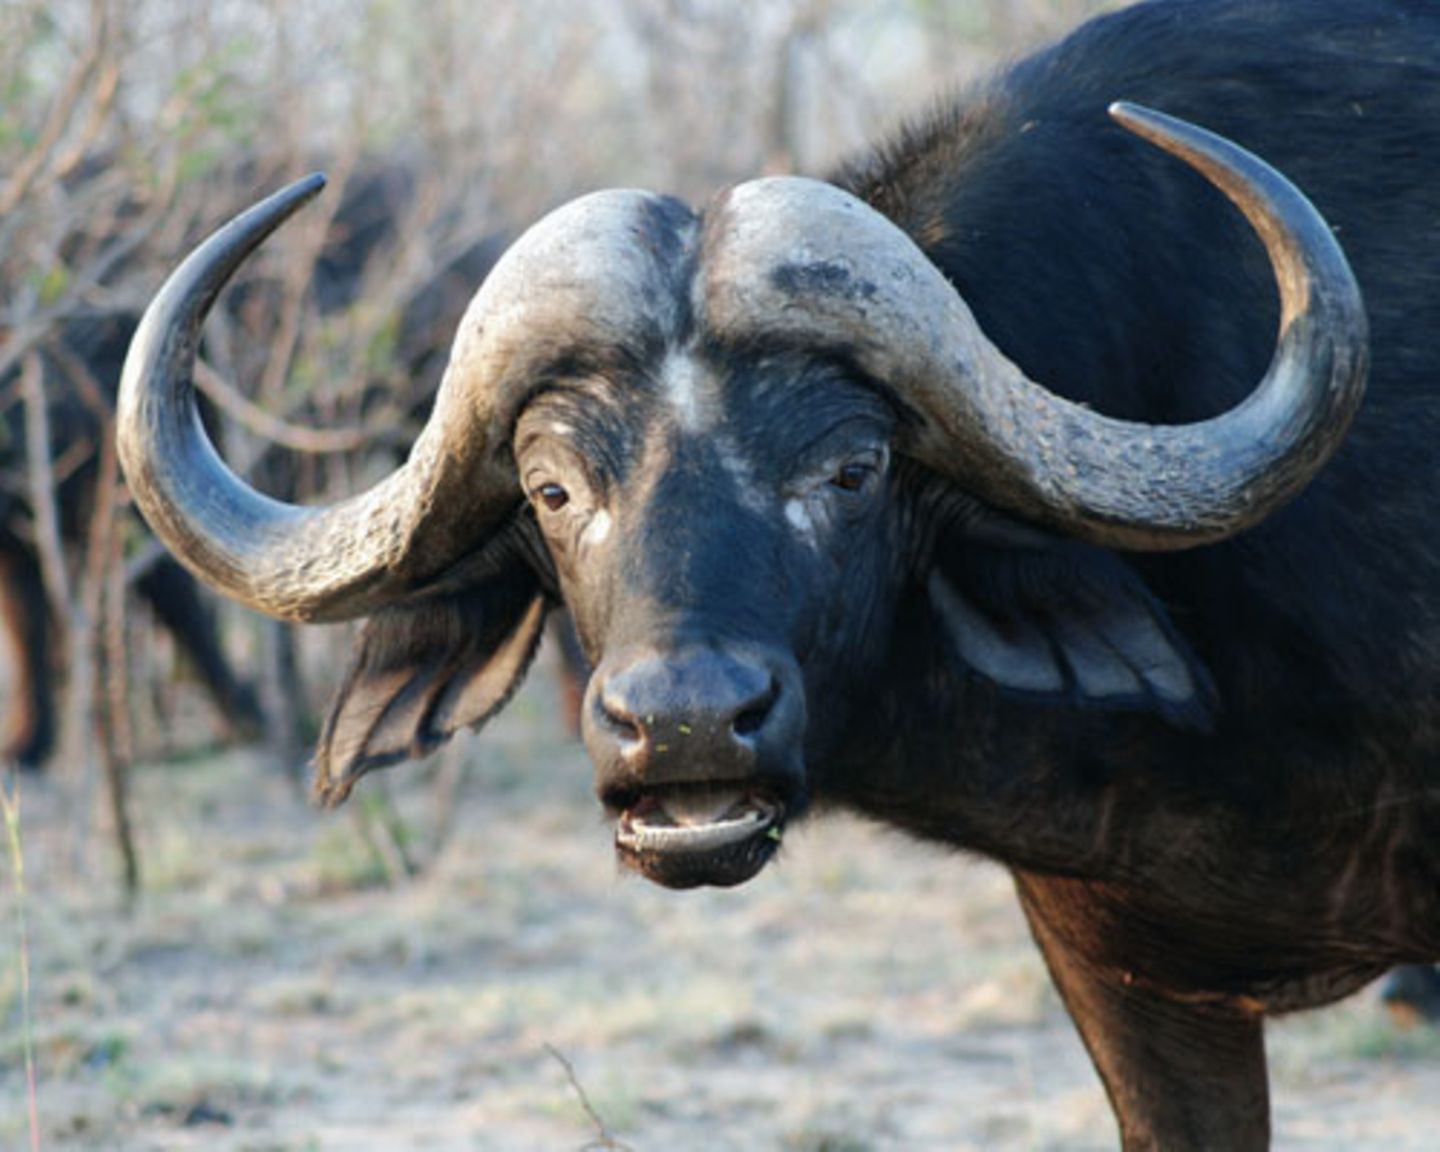 Büffel sind gefährlicher, als es ihr Aussehen mit dem harmlos wirkenden Mittelscheitel aus Horn vermuten lässt.